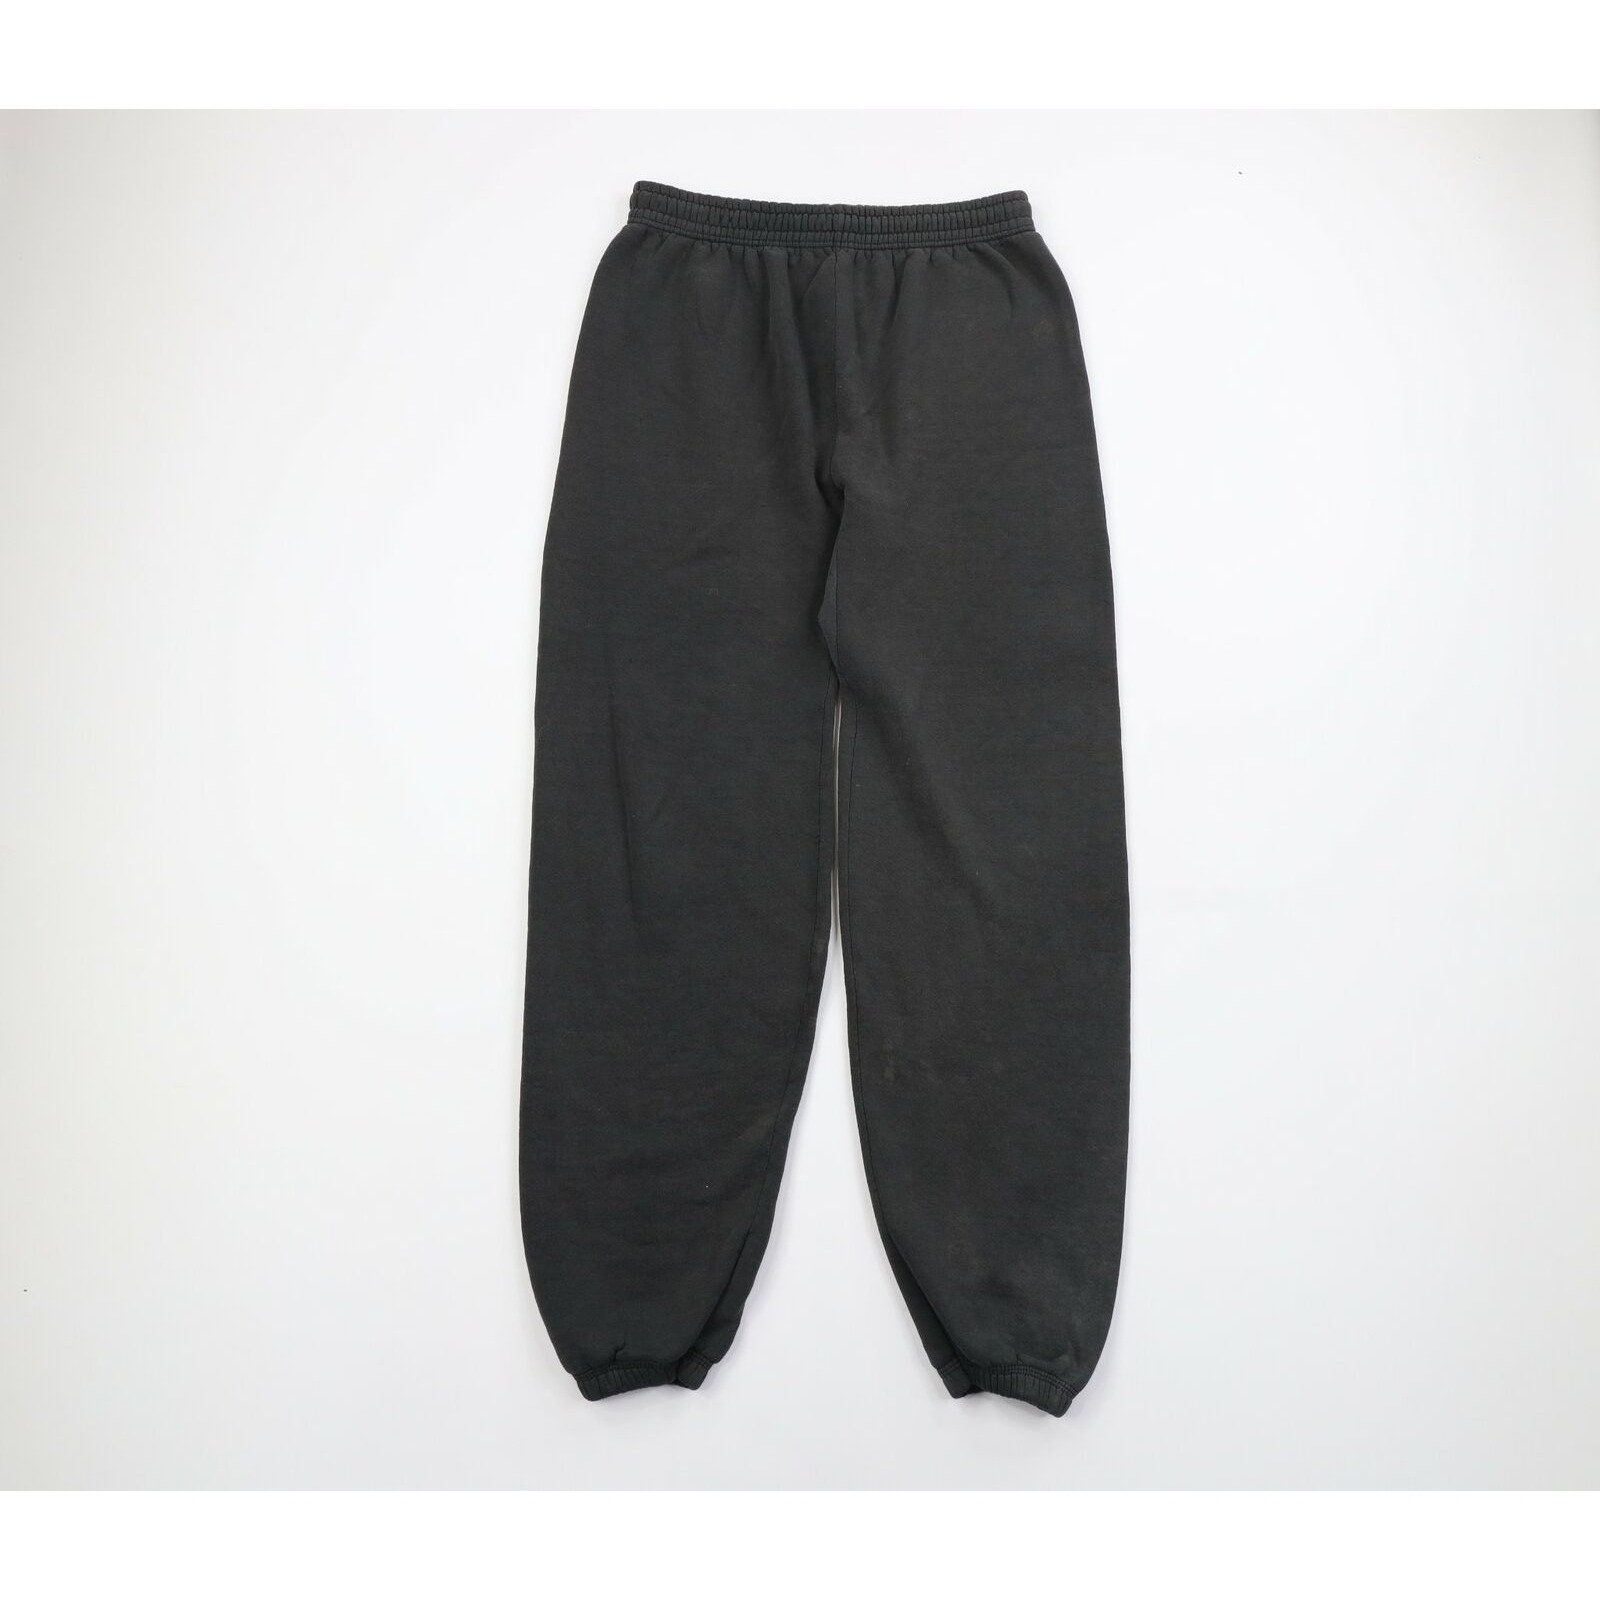 Vintage 1990s Hanes Herway Blank Black Jogger Pants Size Women's Small /  American Vintage / Vintage Pants / Vintage Sweat Pants 